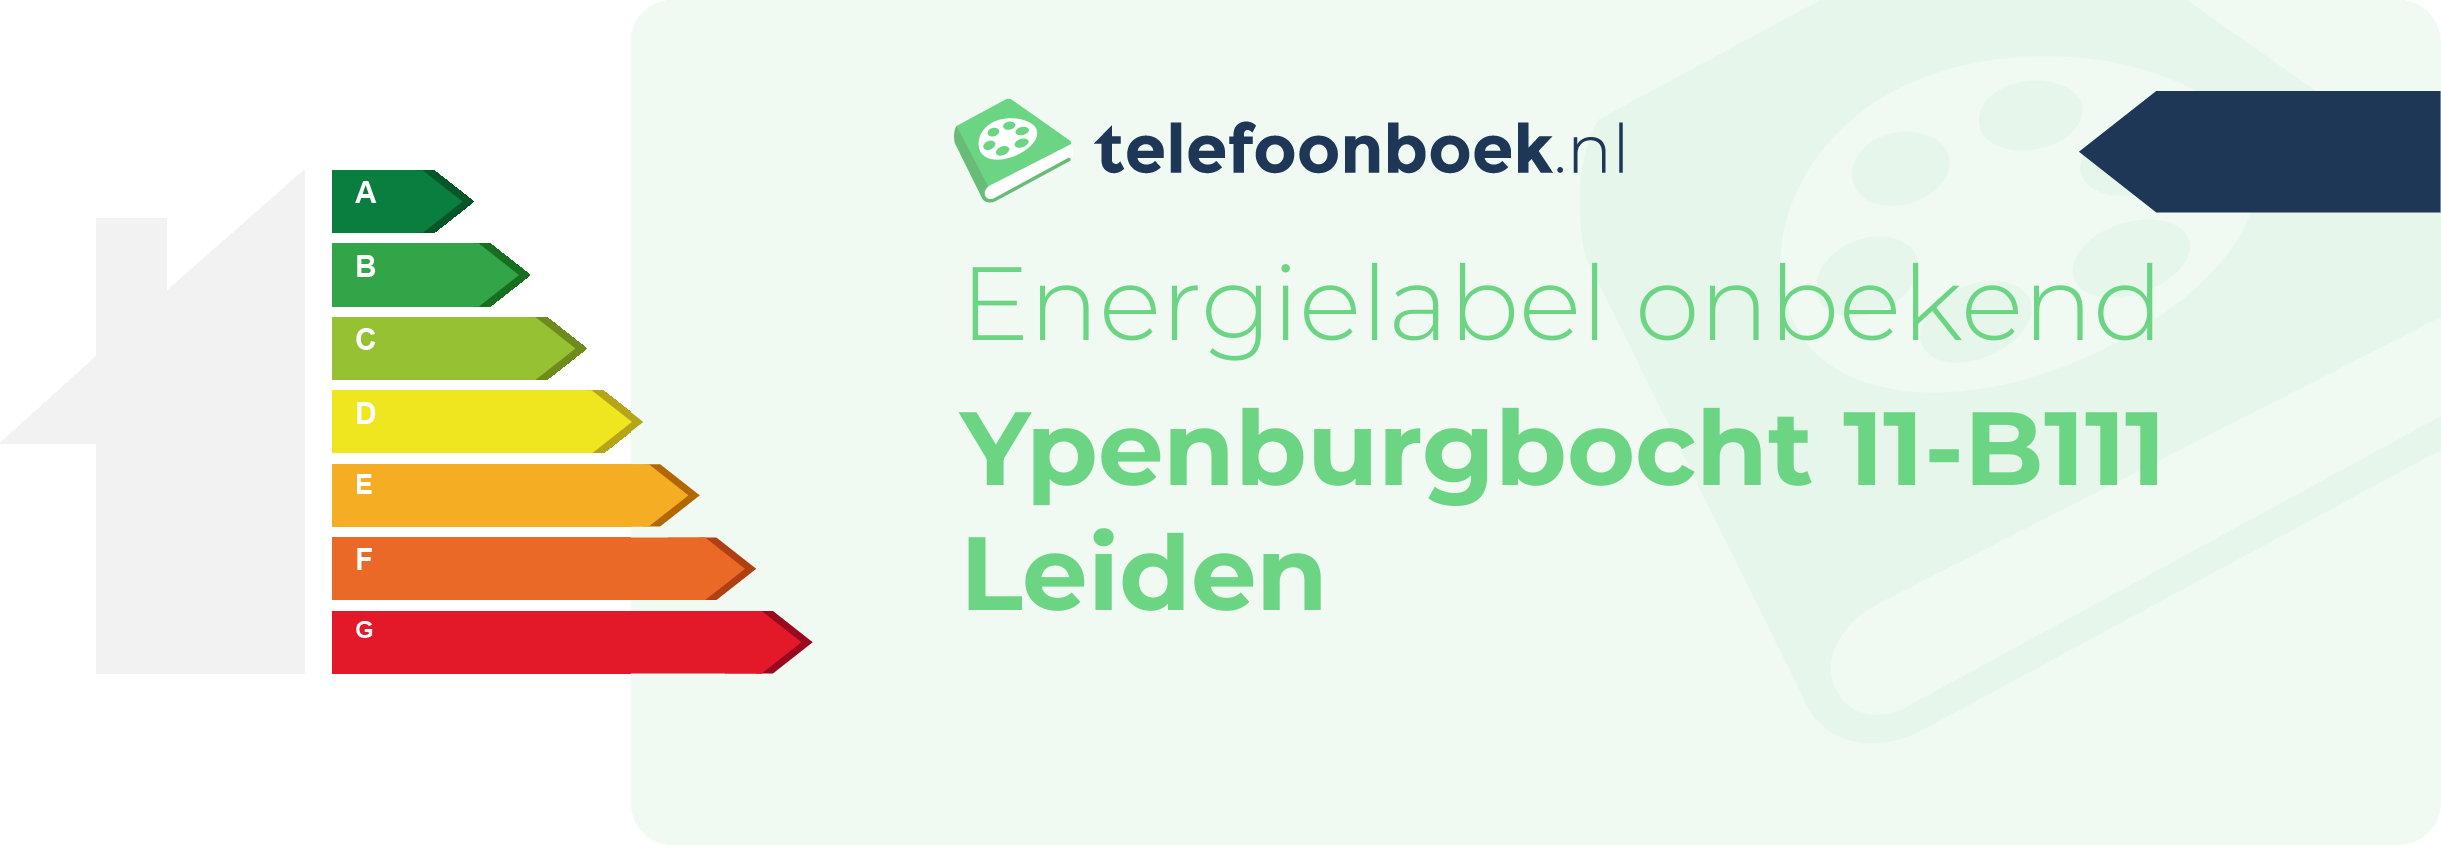 Energielabel Ypenburgbocht 11-B111 Leiden